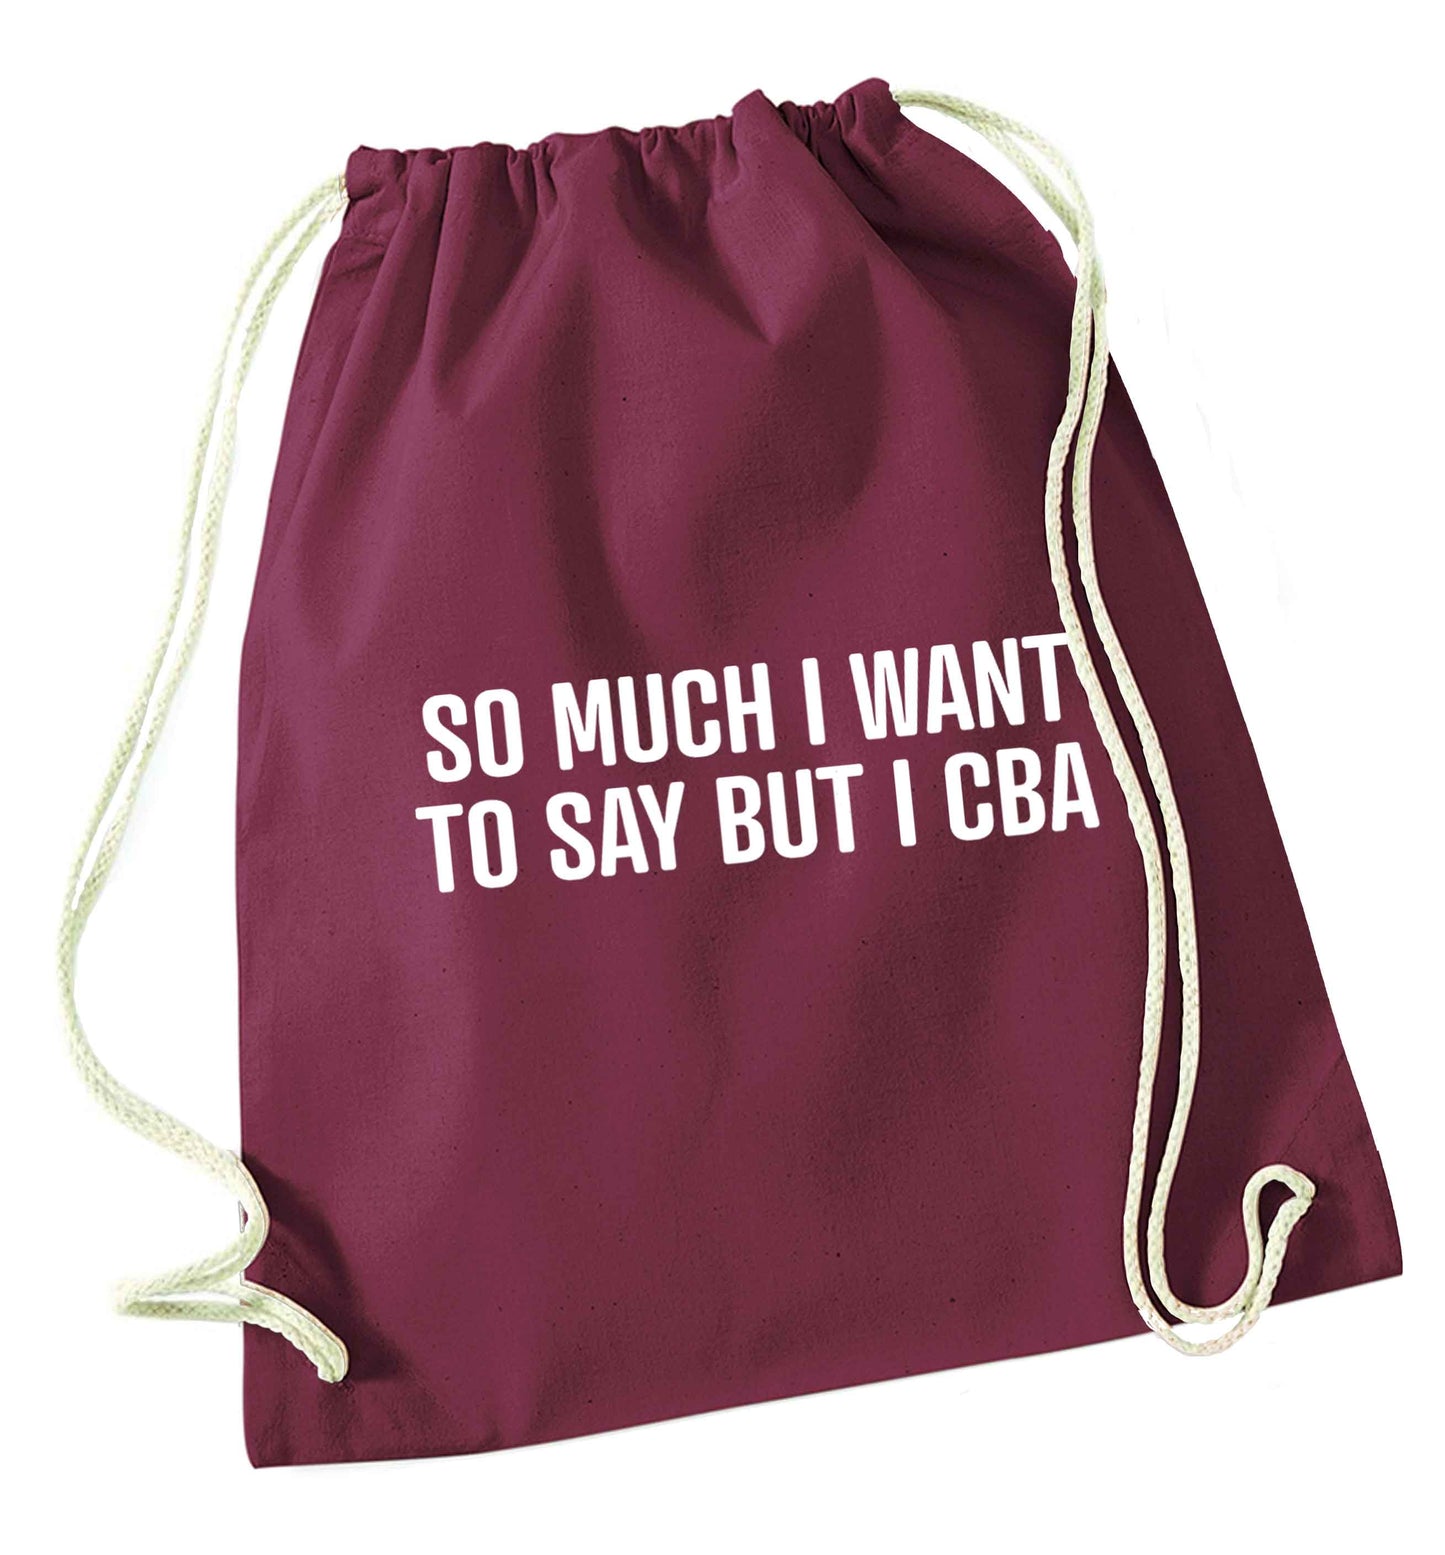 So much I want to say I cba  maroon drawstring bag